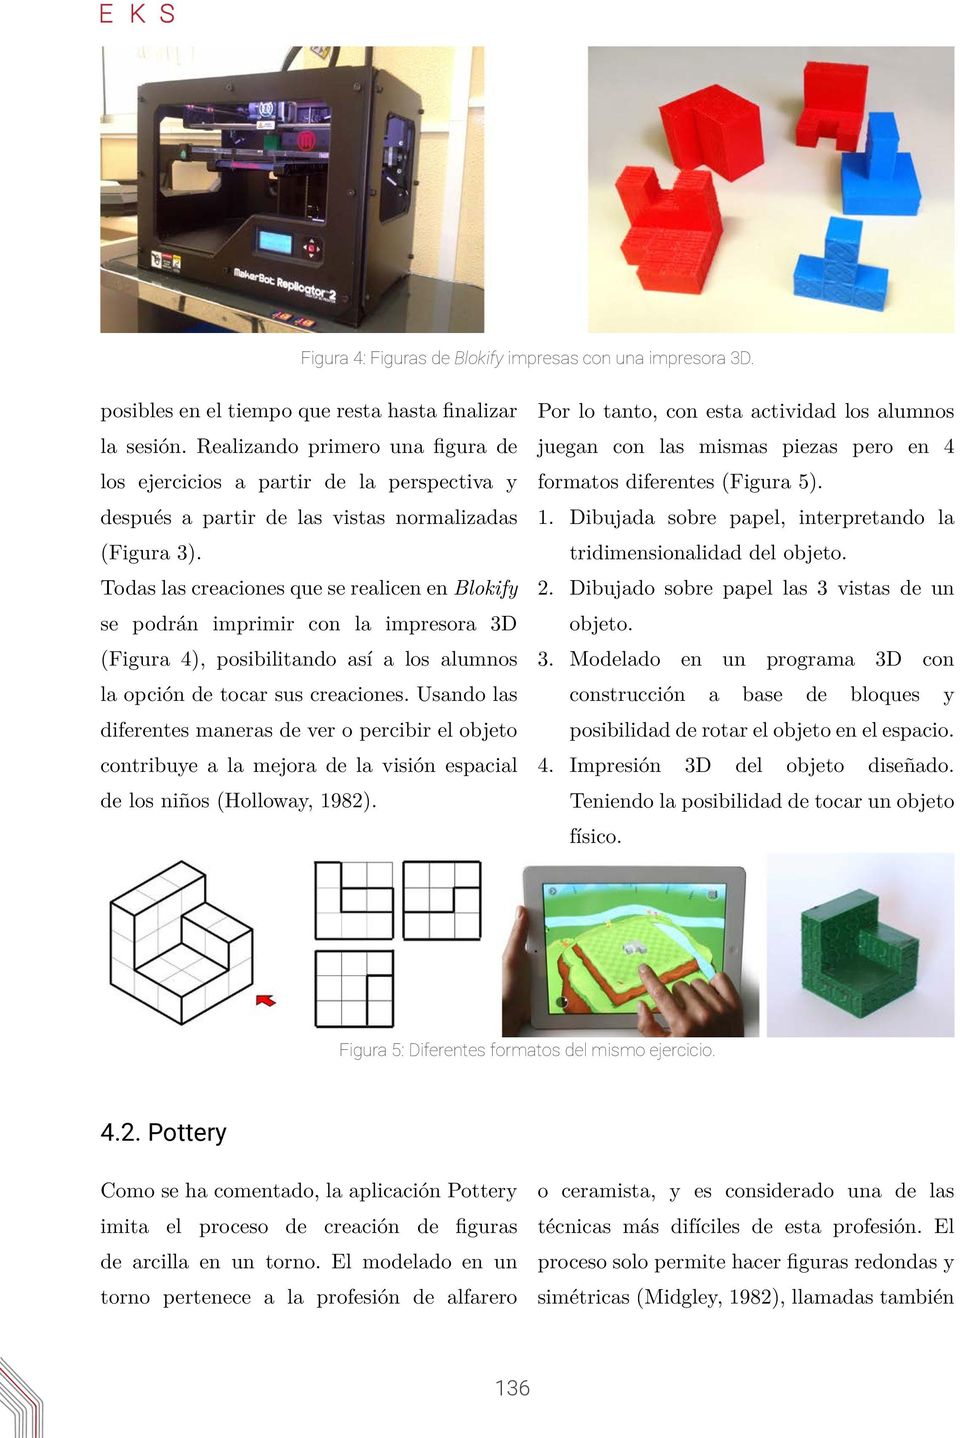 Todas las creaciones que se realicen en Blokify se podrán imprimir con la impresora 3D (Figura 4), posibilitando así a los alumnos la opción de tocar sus creaciones.